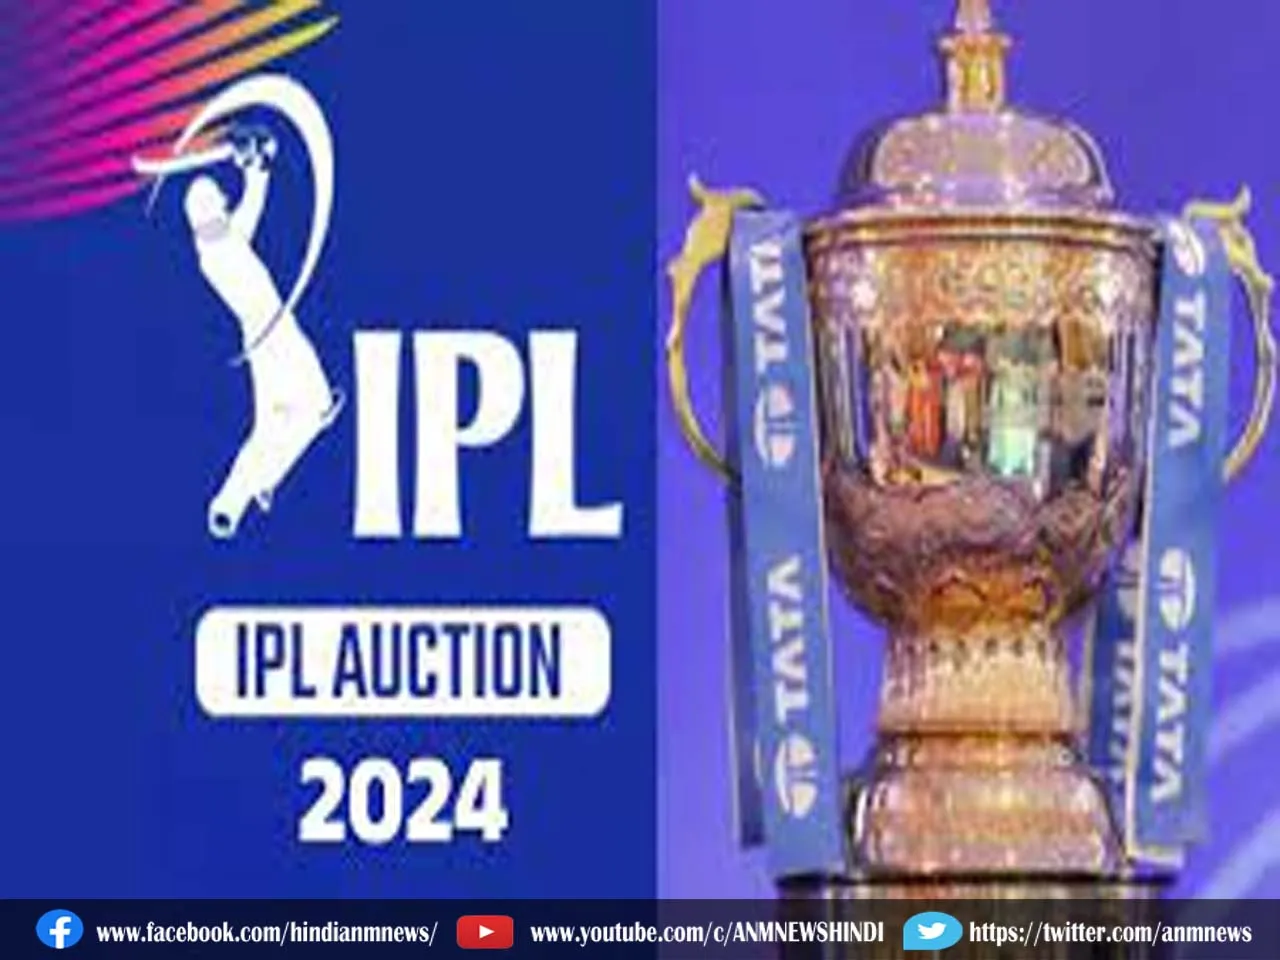 IPL Auction 2024 : ऑक्शन की तारीख का ऐलान, नीलामी के लिए शॉर्टलिस्ट हुए 333 खिलाड़ियों के नाम